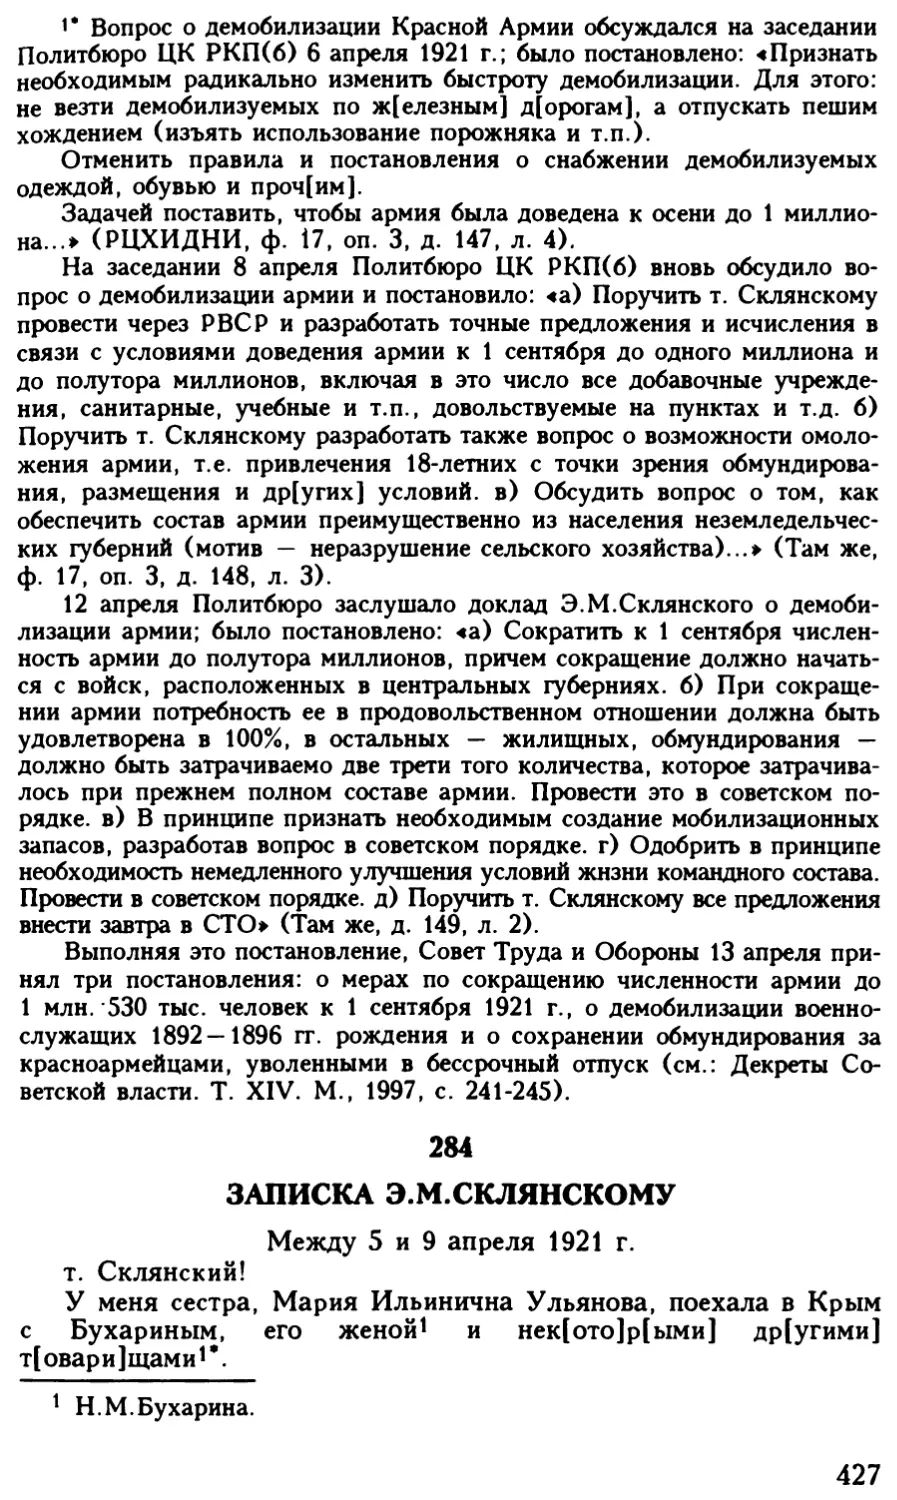 284. Записка Э.М.Склянскому. Между 5 и 9 апреля 1921 г